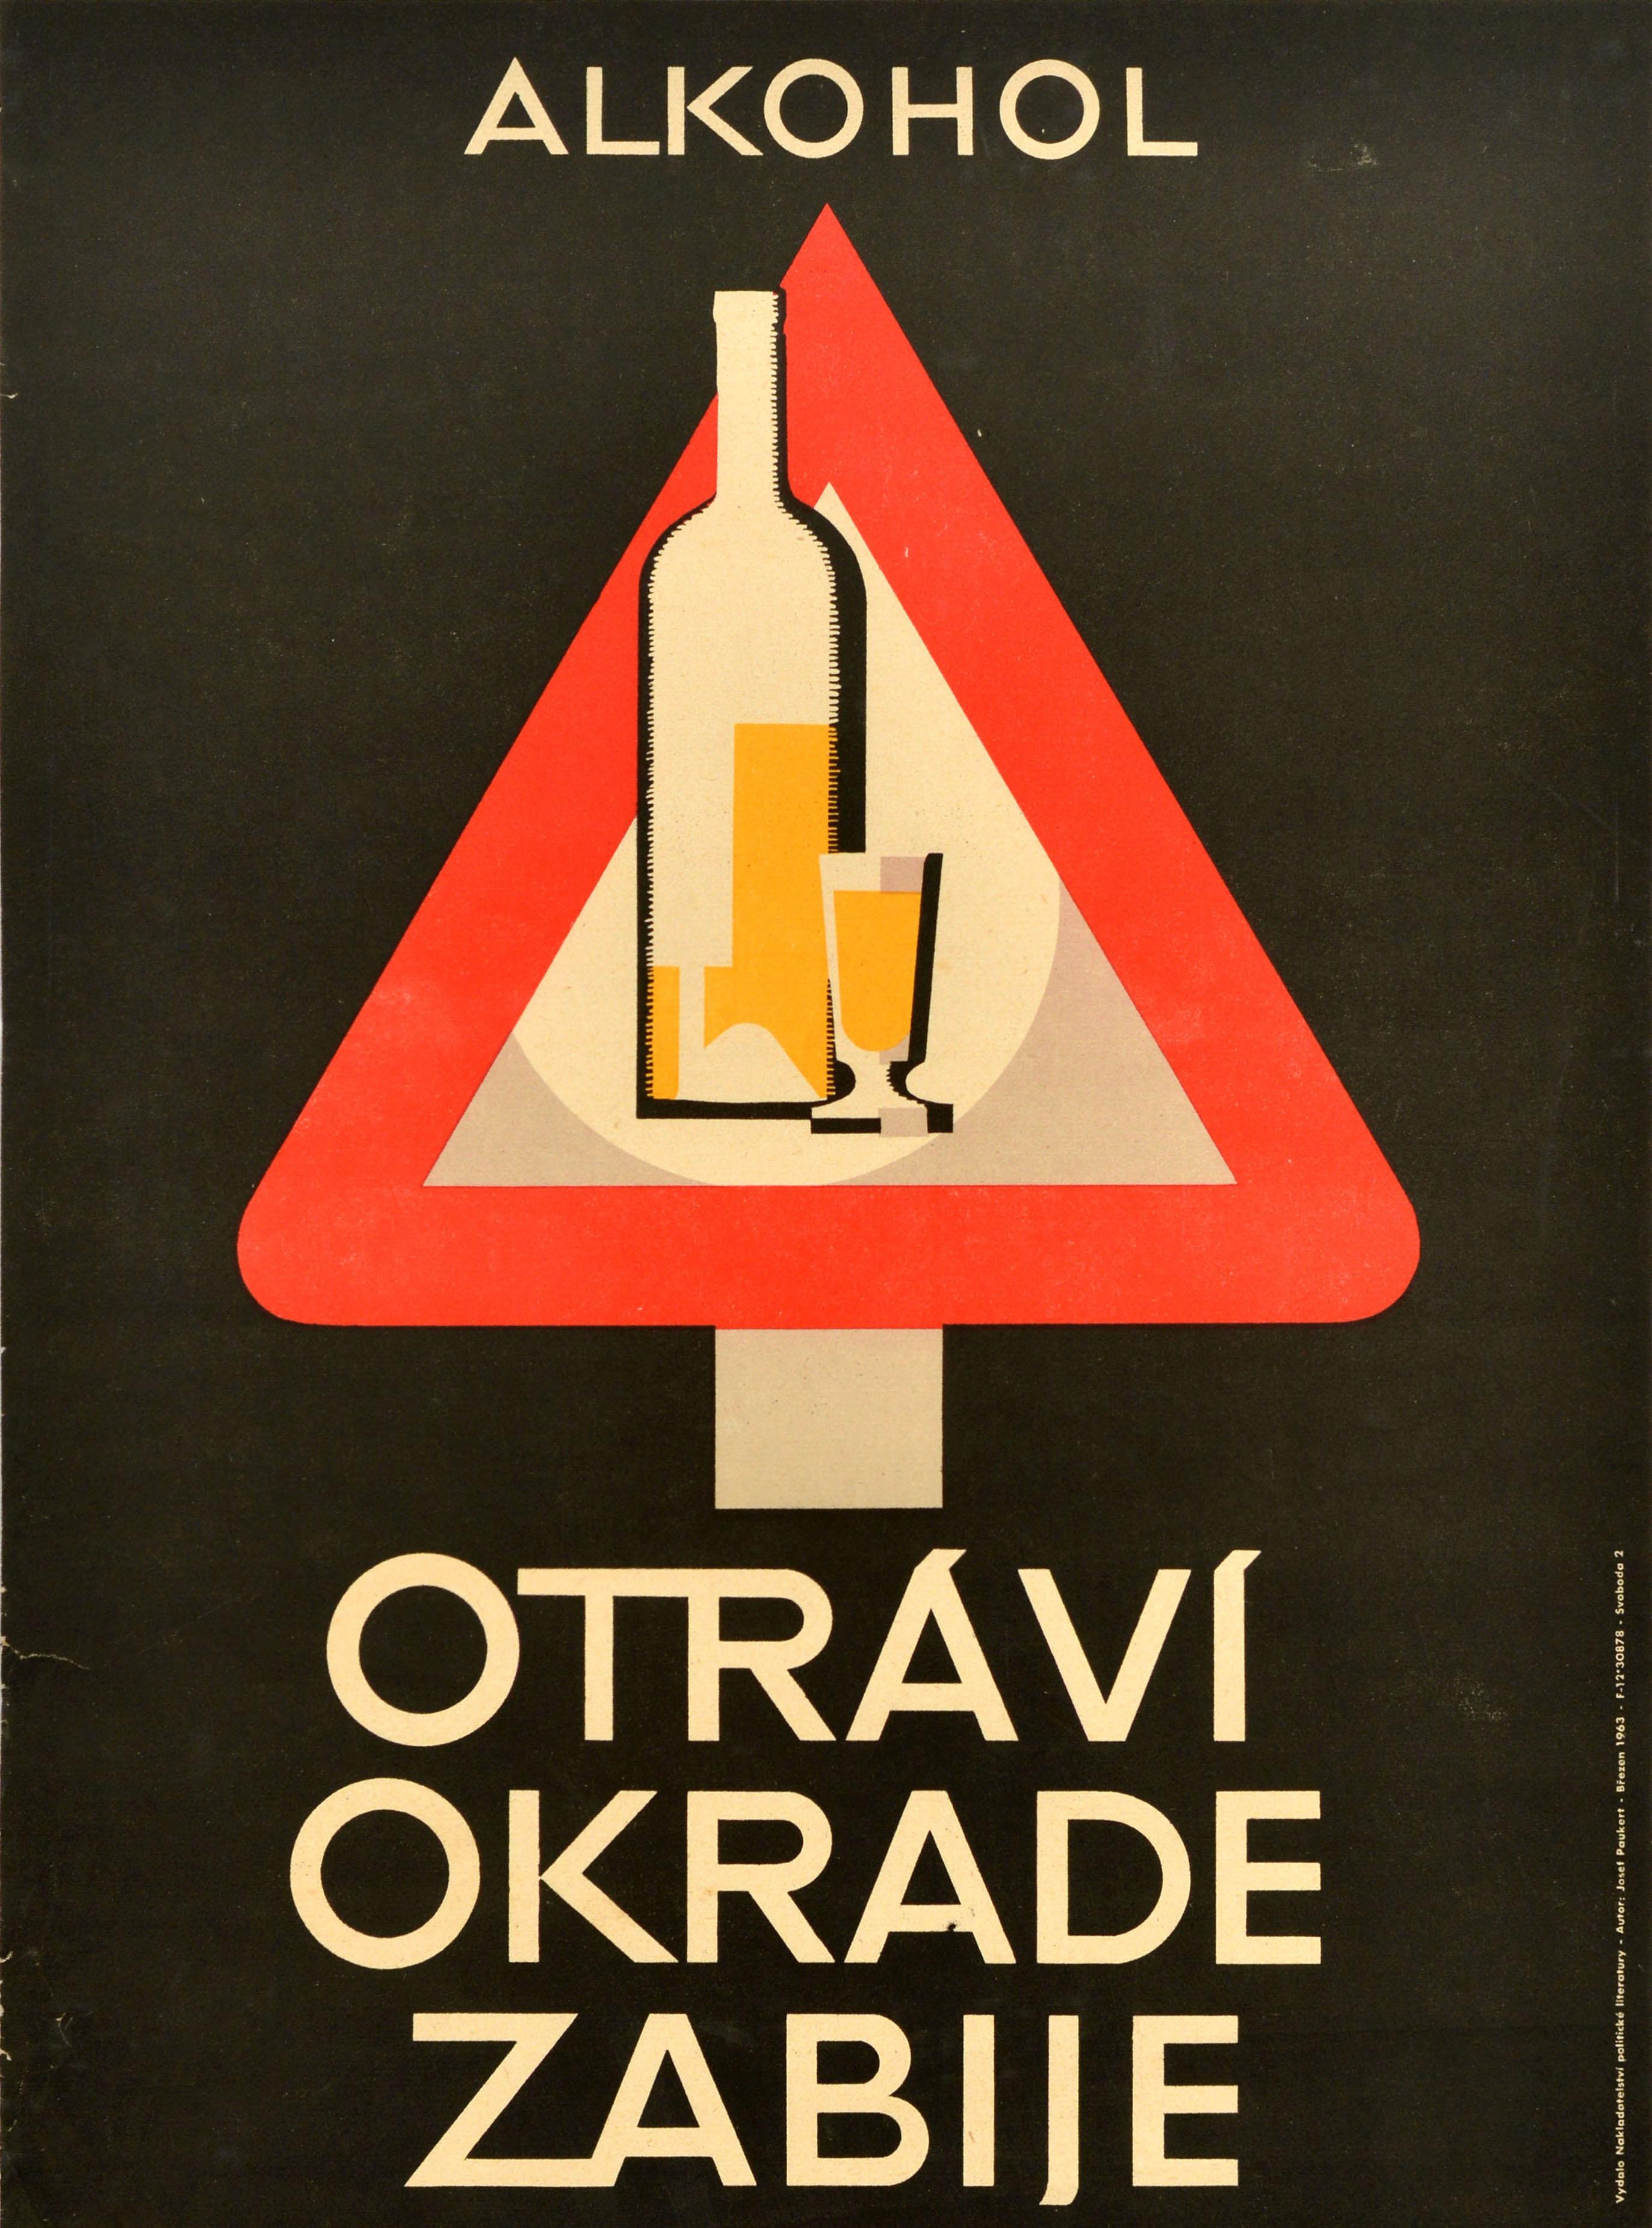 poster anti alkohol